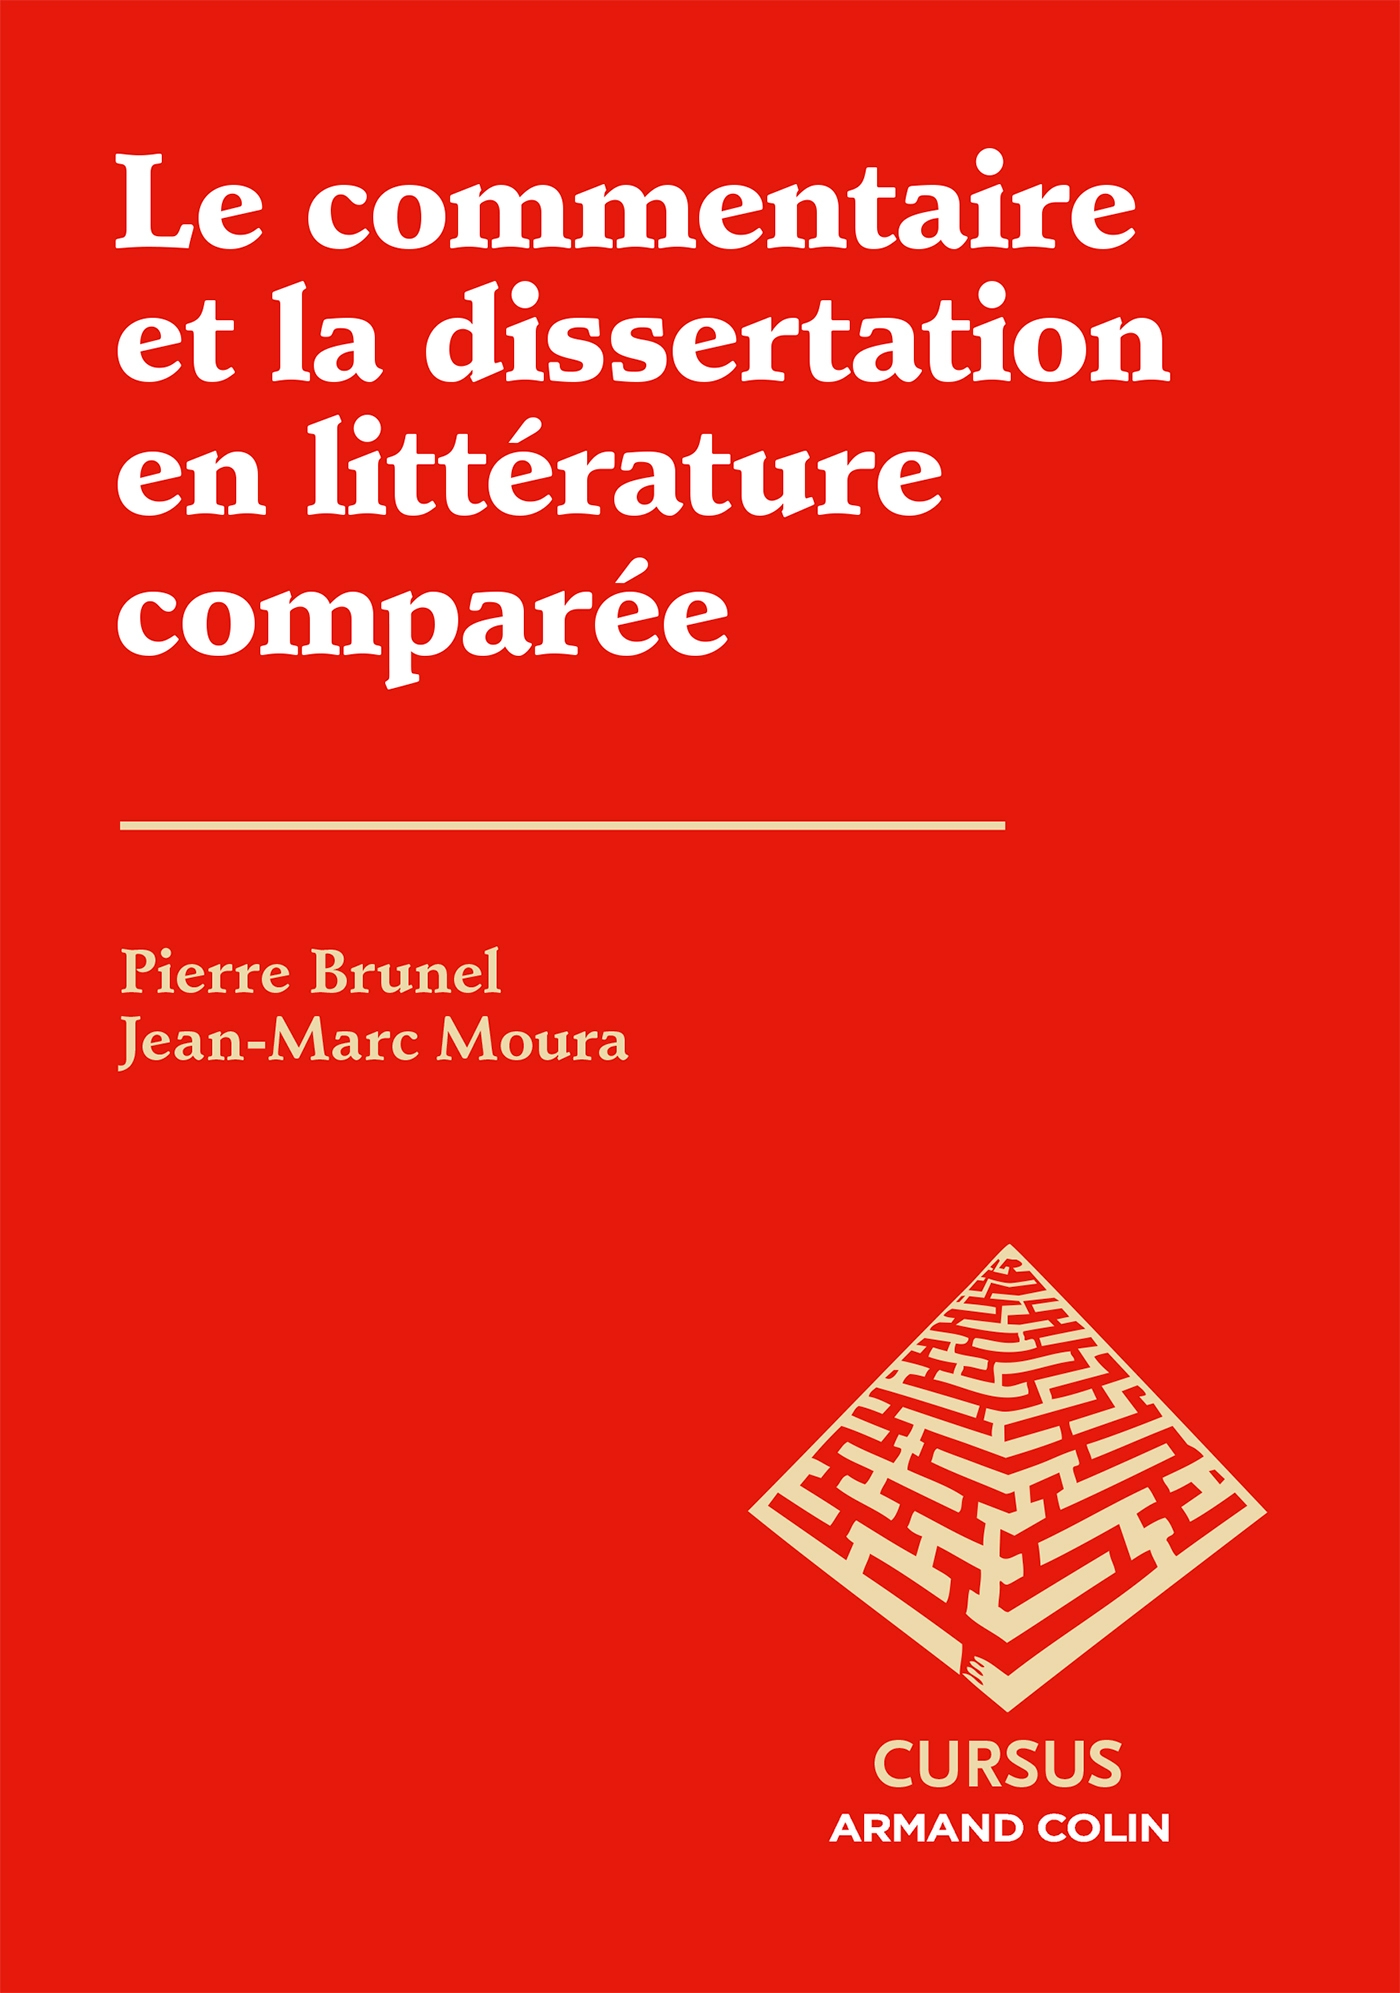 Dissertation 24h De La Vie D une Femme Le commentaire et la dissertation en littérature comparée - Livre et ebook  Littérature de Pierre Brunel - Dunod